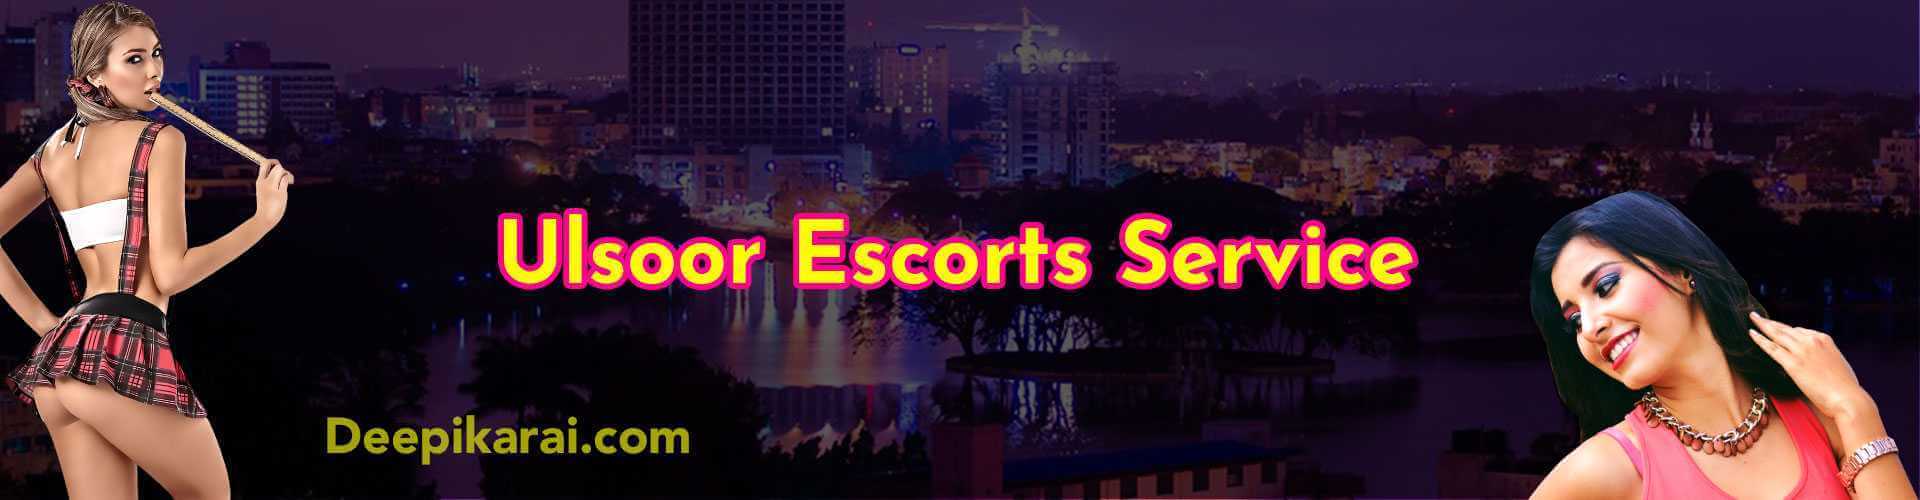 ulsoor escorts services